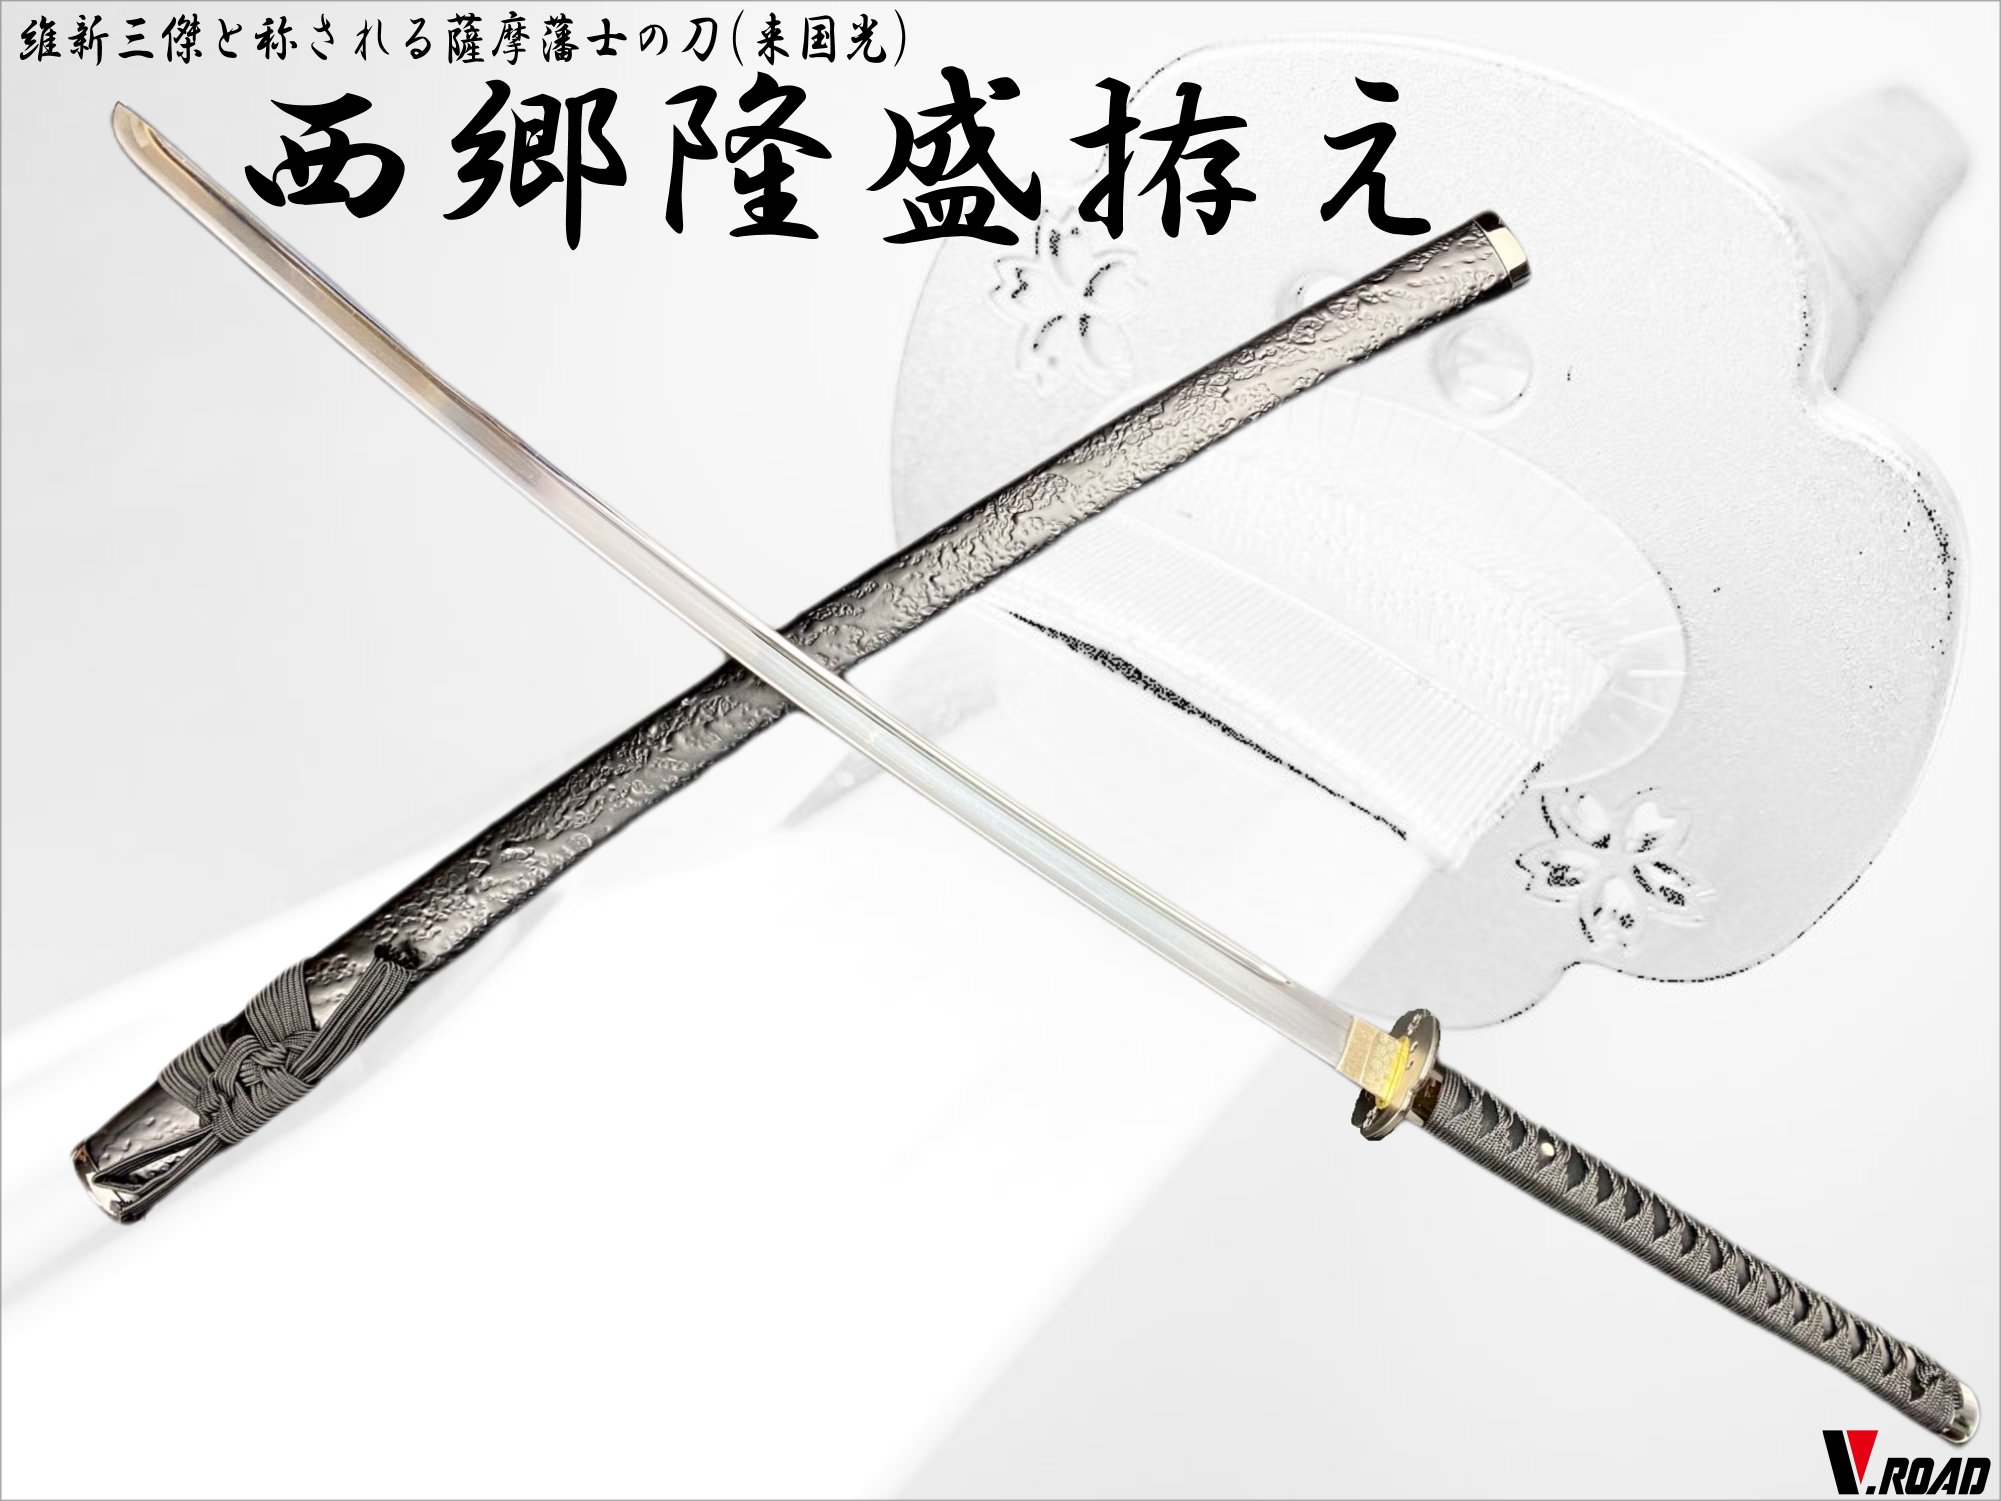 【楽天市場】美術刀剣 模造刀 金茶大刀(並刀身・上仕上げ) SW 